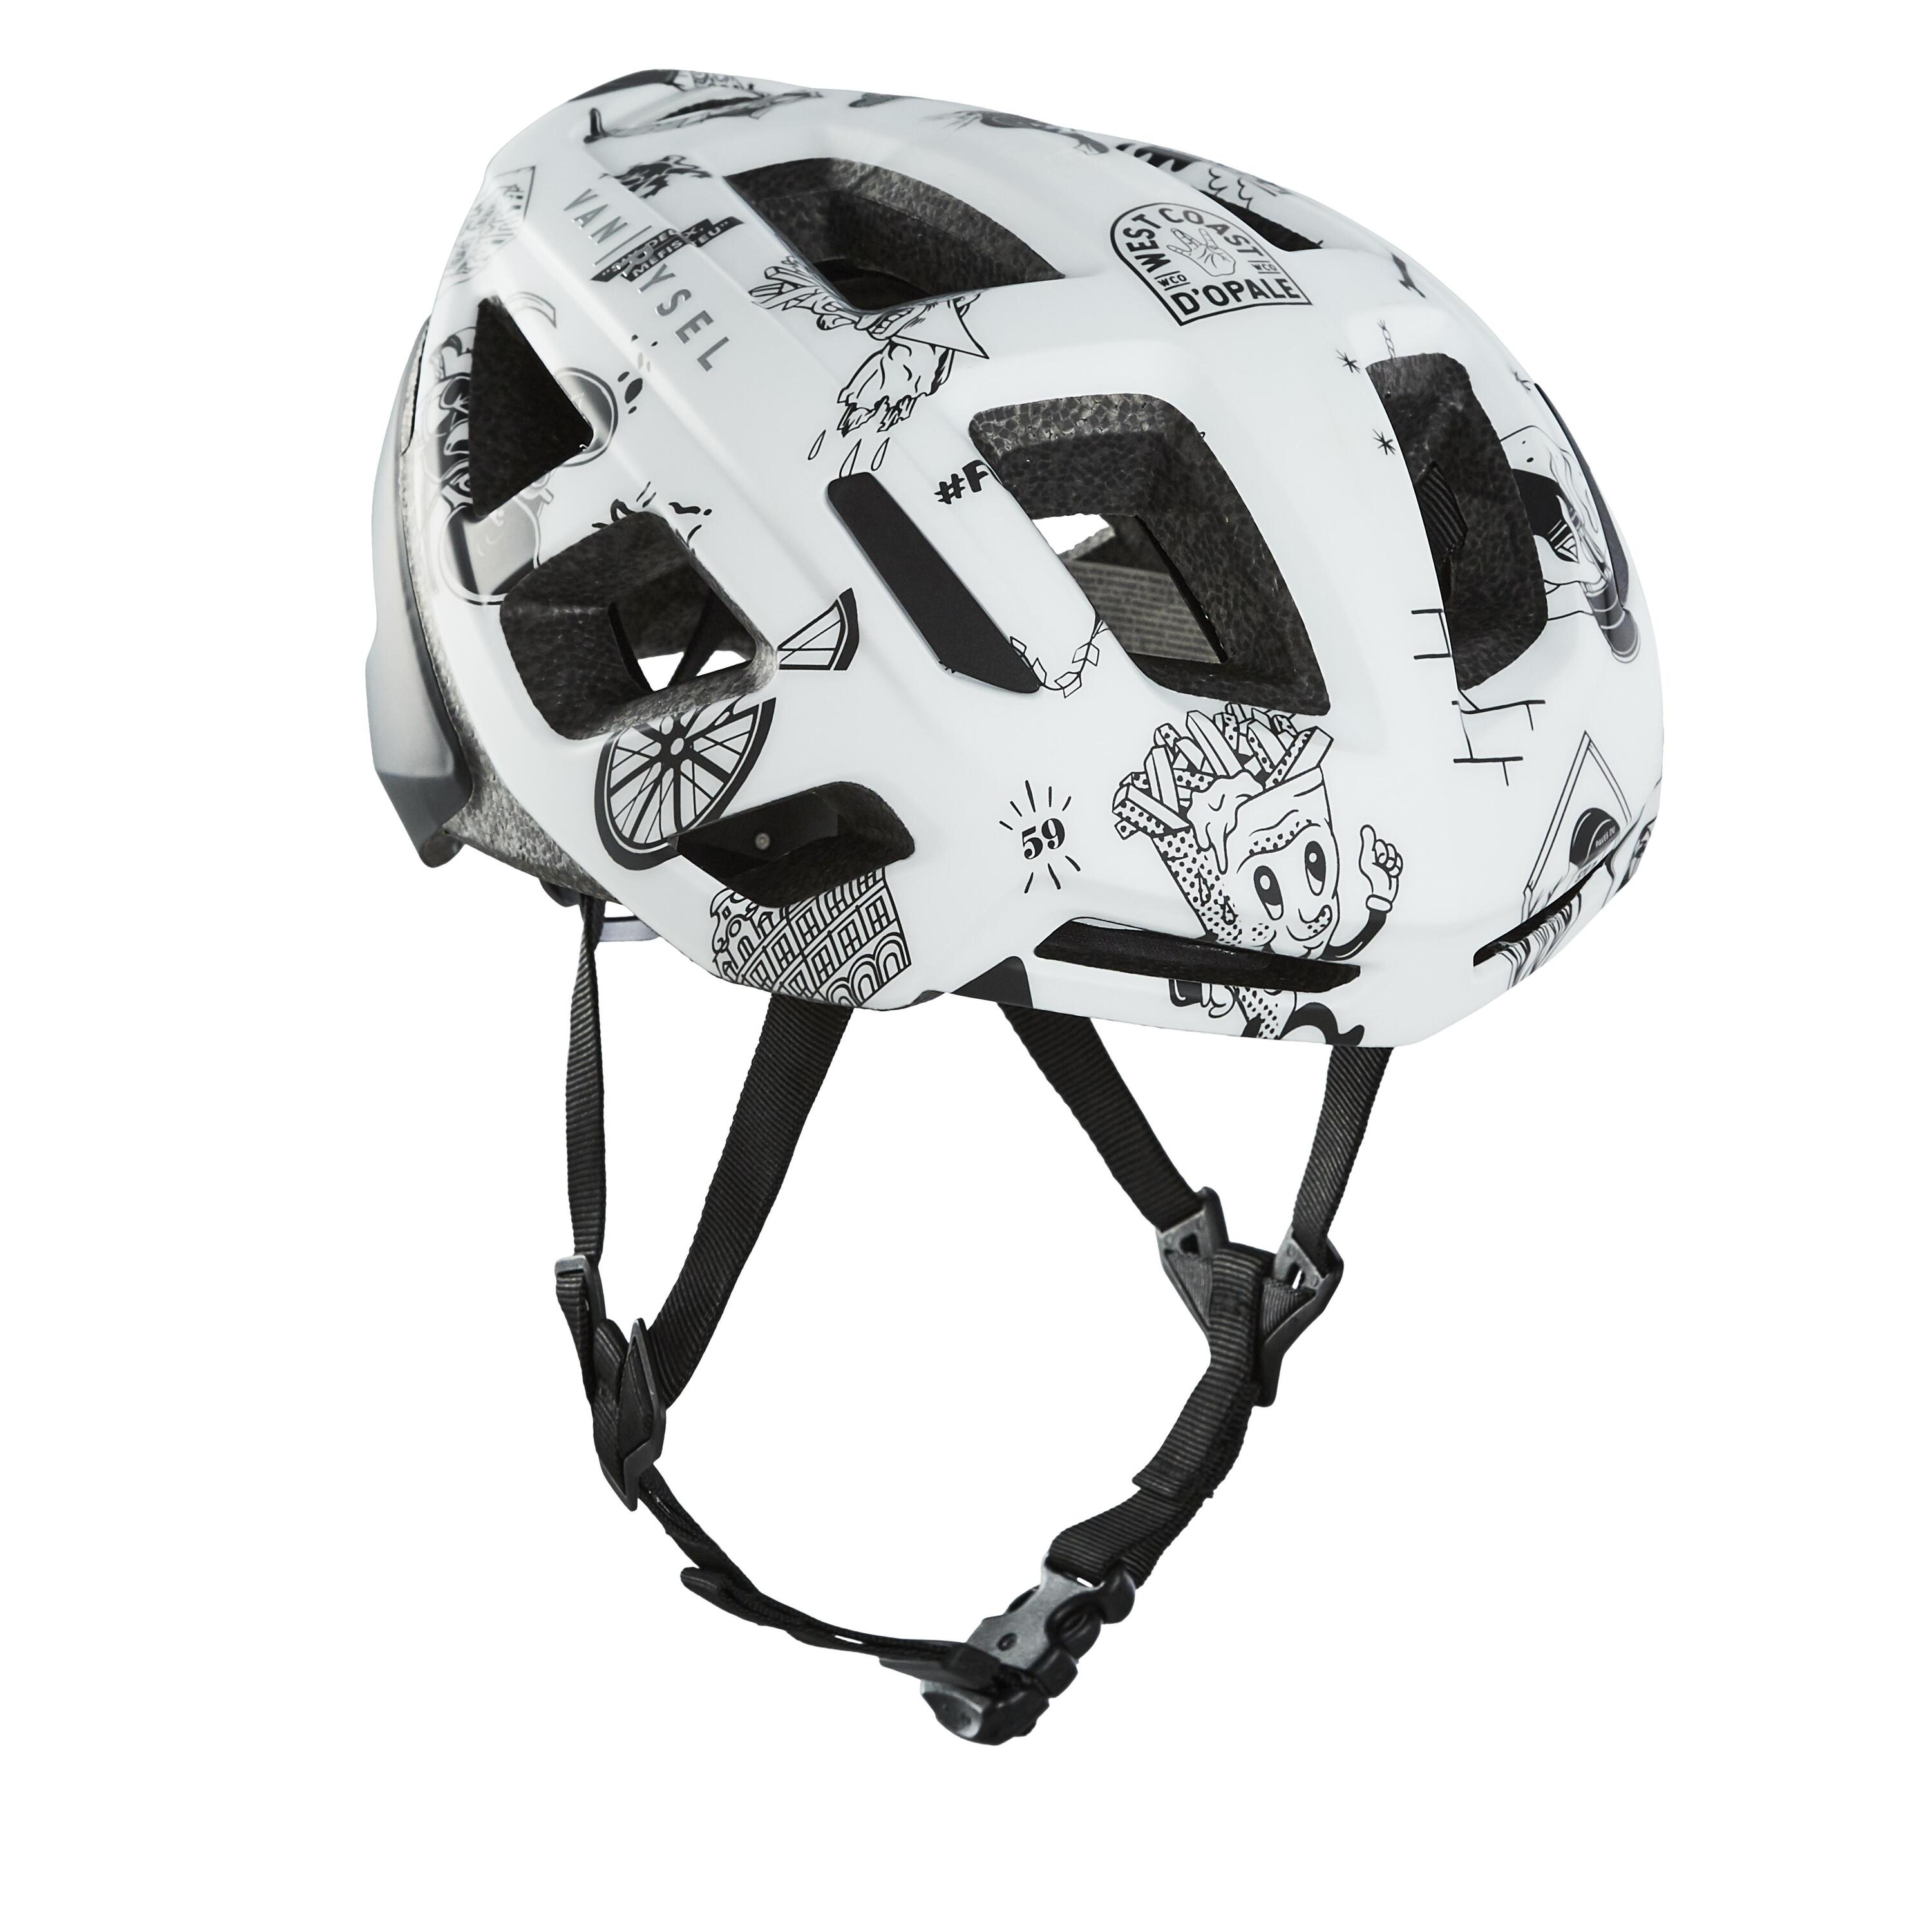 VAN RYSEL Road Cycling Helmet RoadR 500 - Flanders